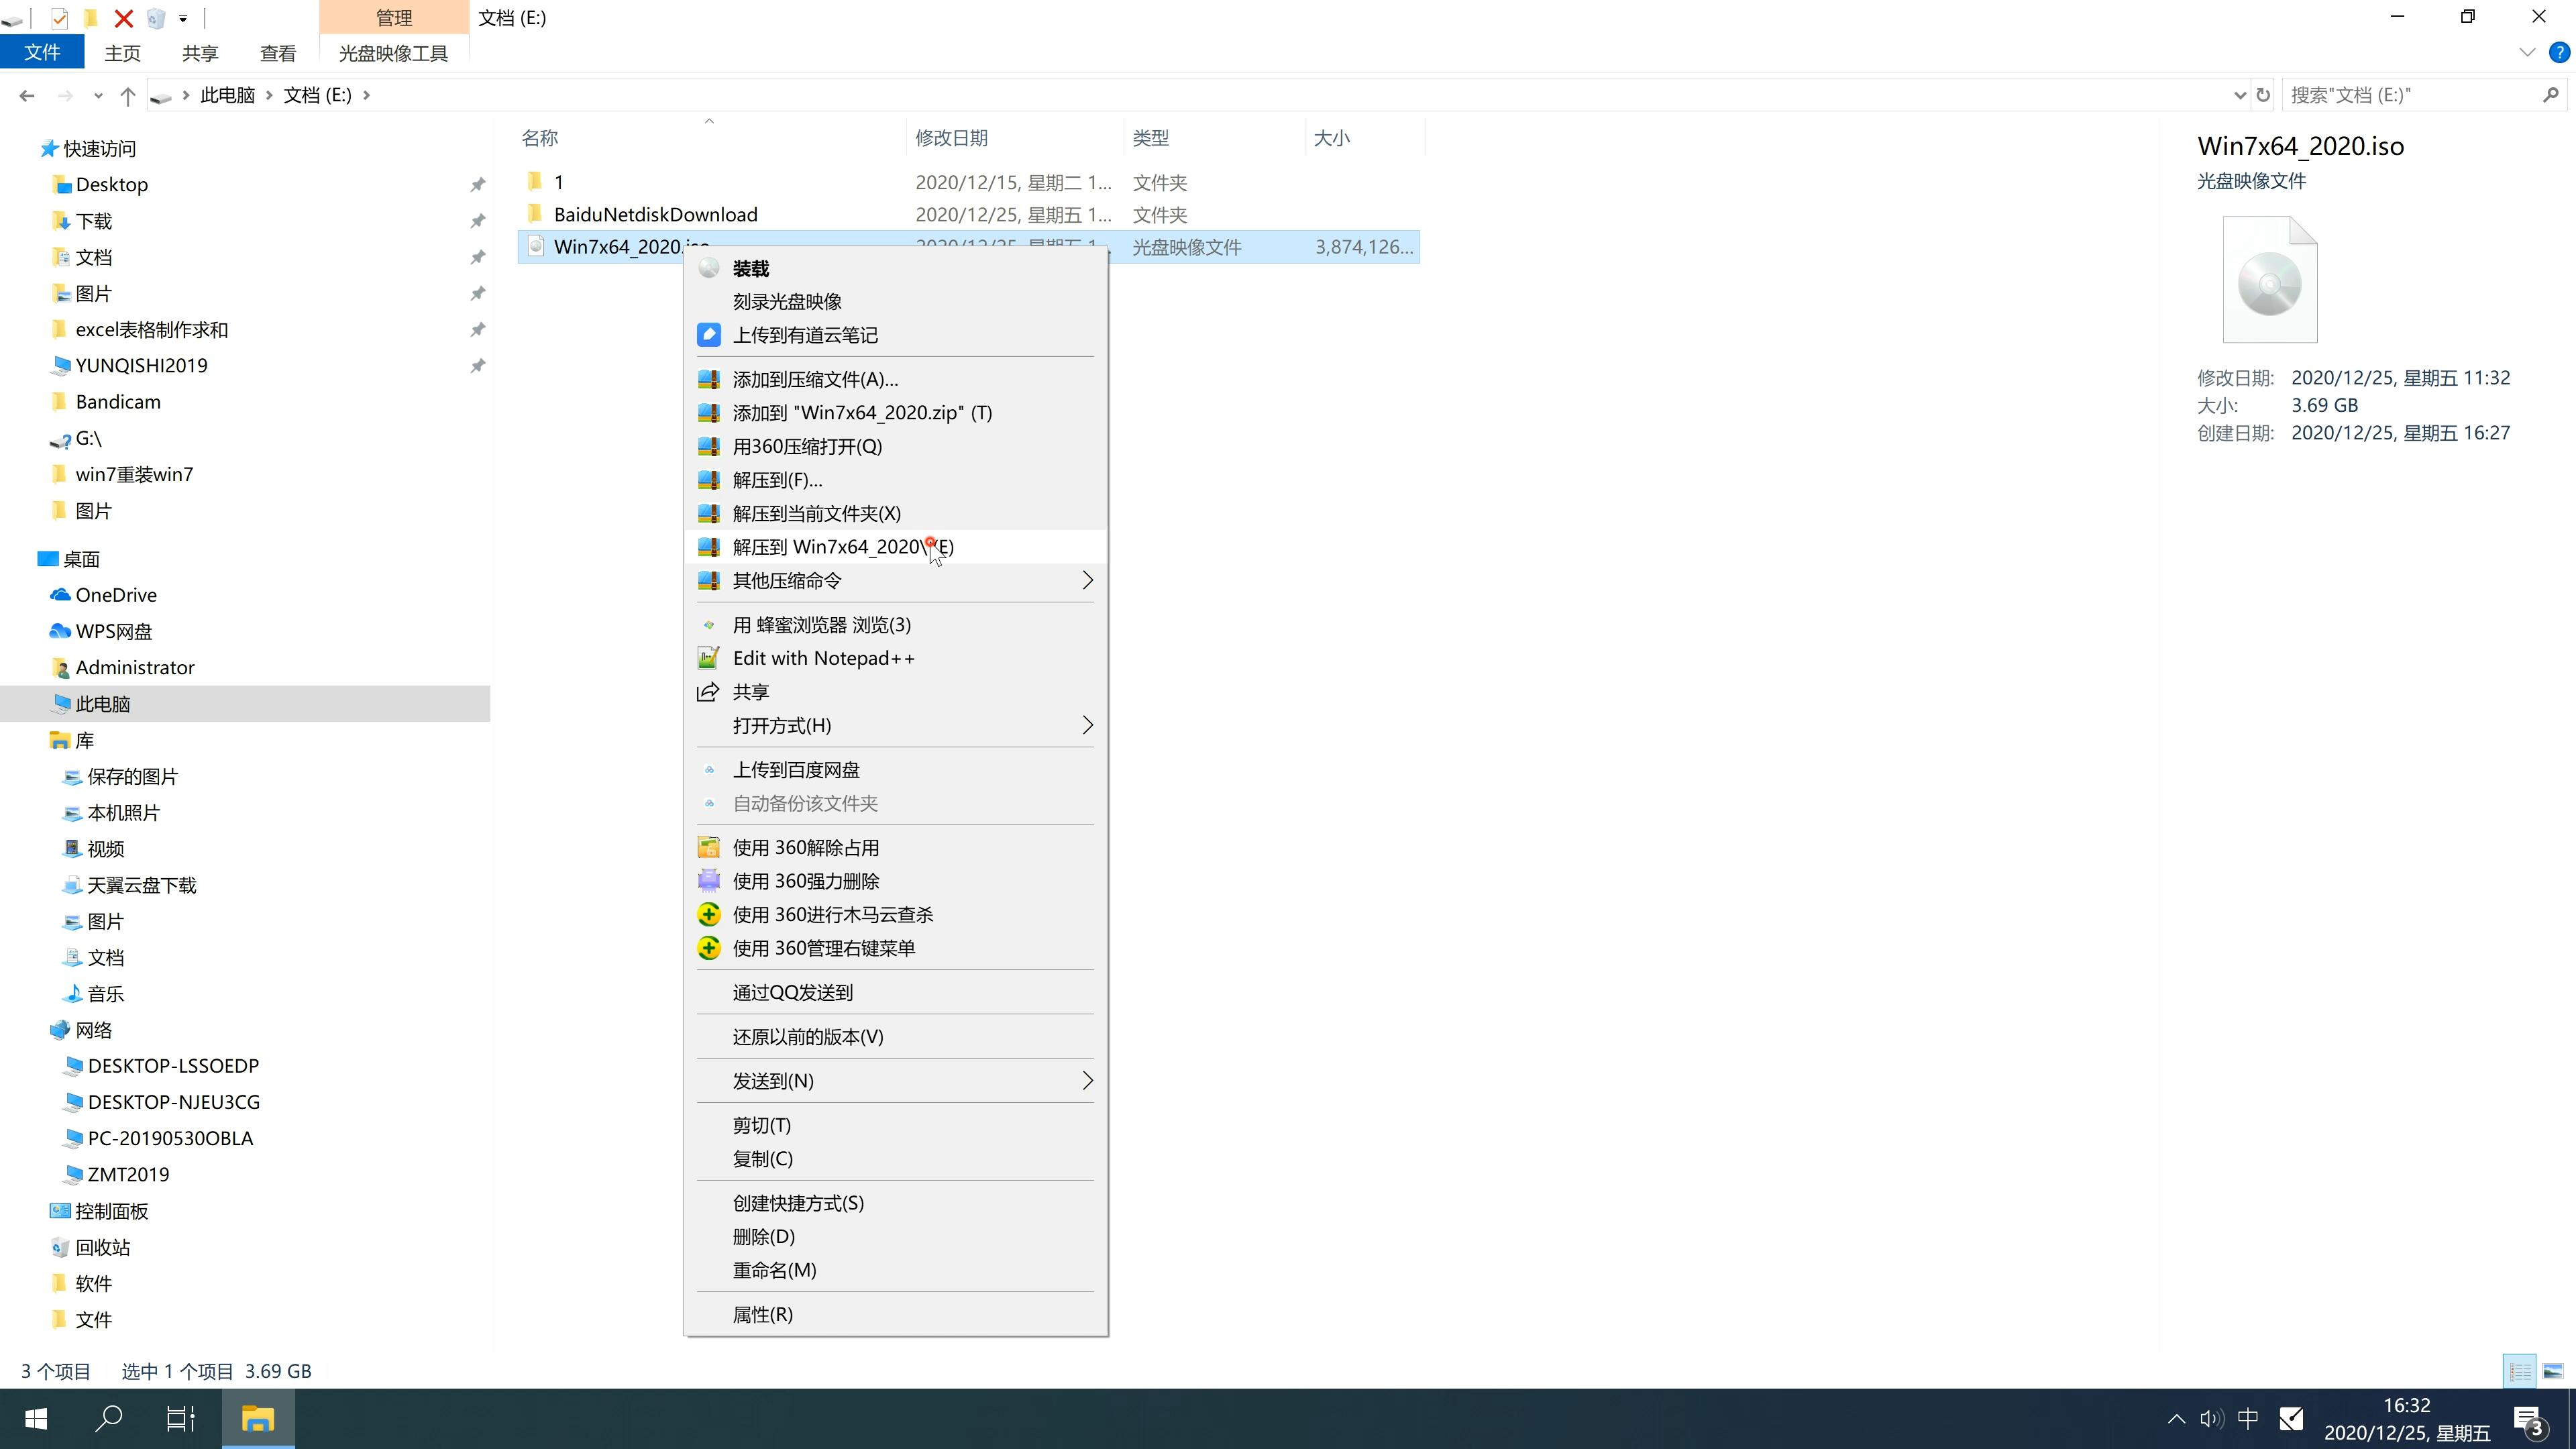 新戴尔笔记本专用系统 Ghost Window7 64 SP1 极速装机版 V2021.09(2)